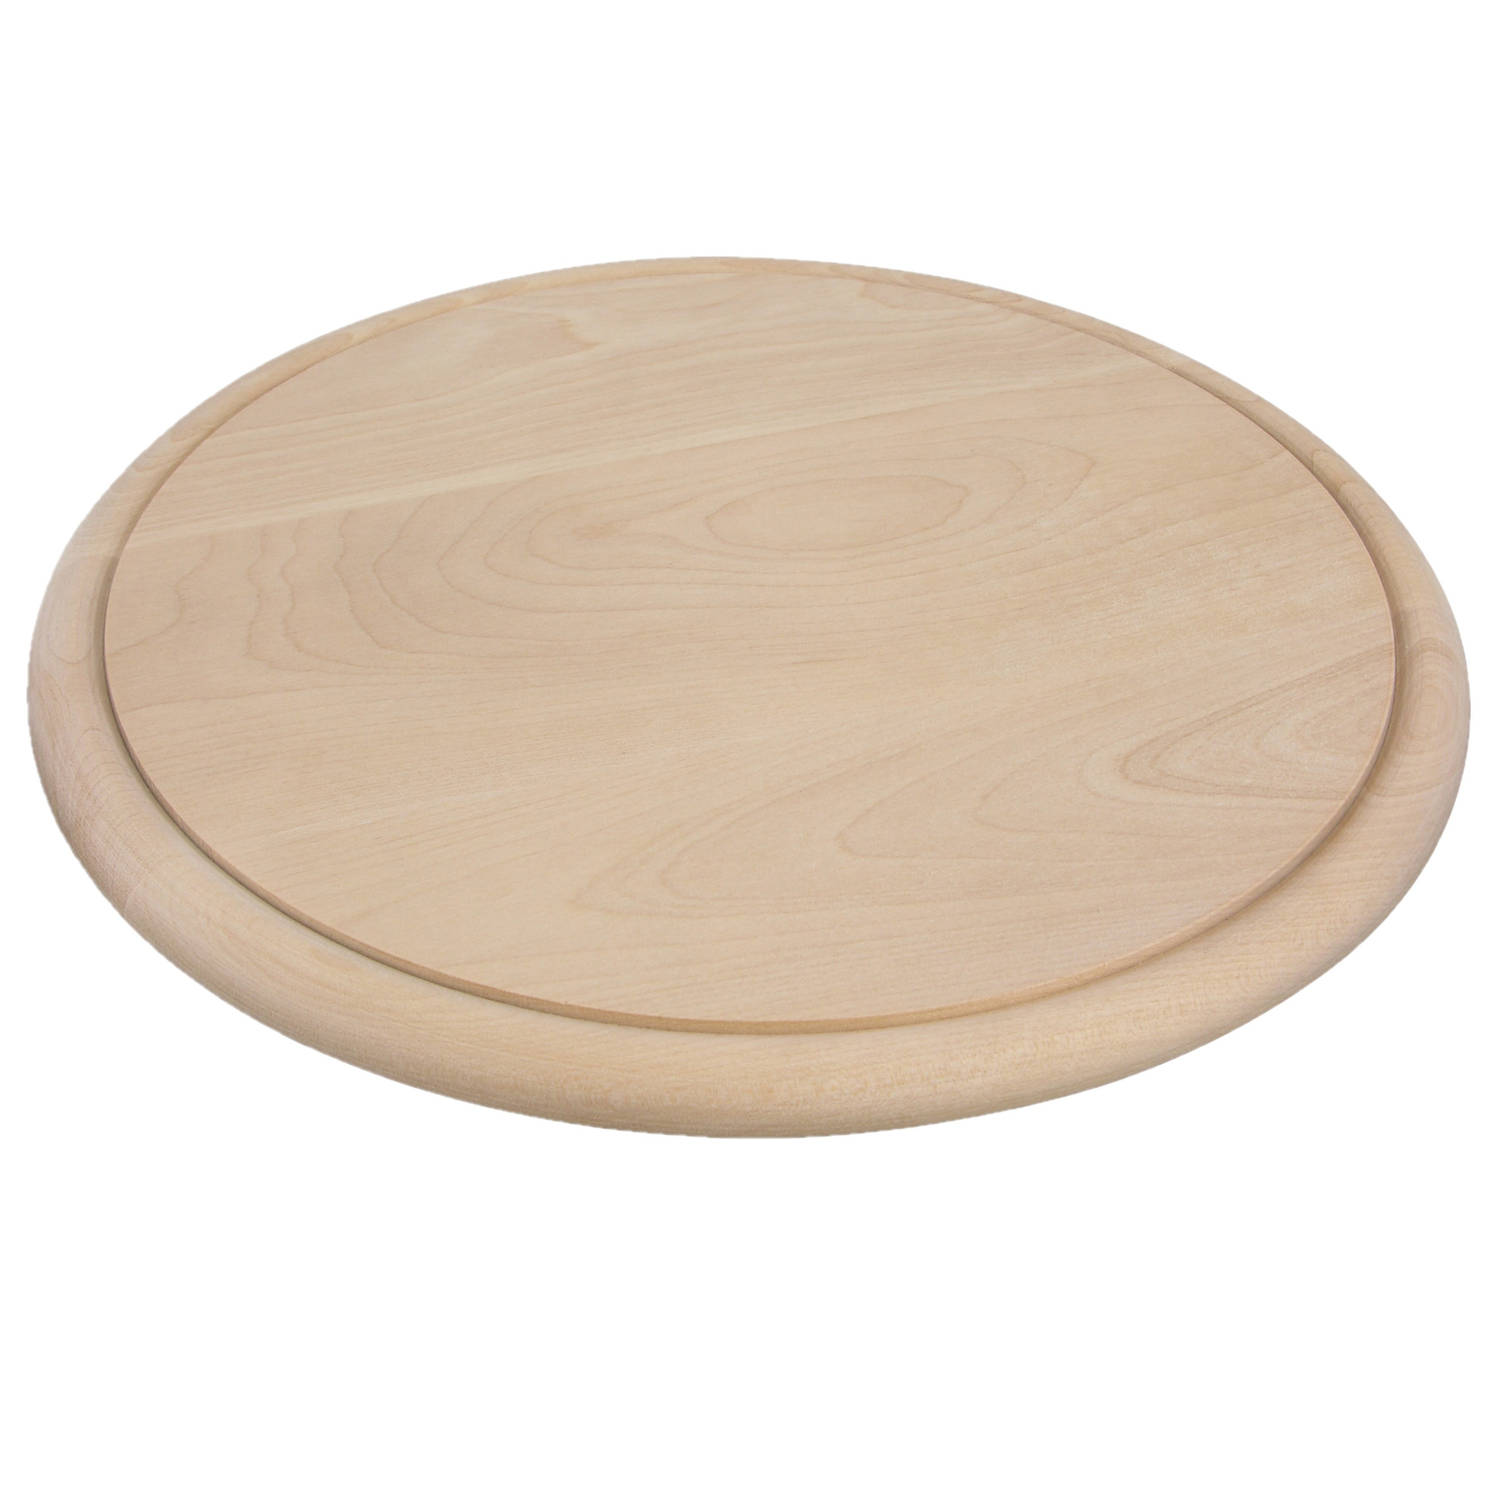 Ronde houten ham plankjes / broodplank / serveer plank 25 cm - Serveerplanken